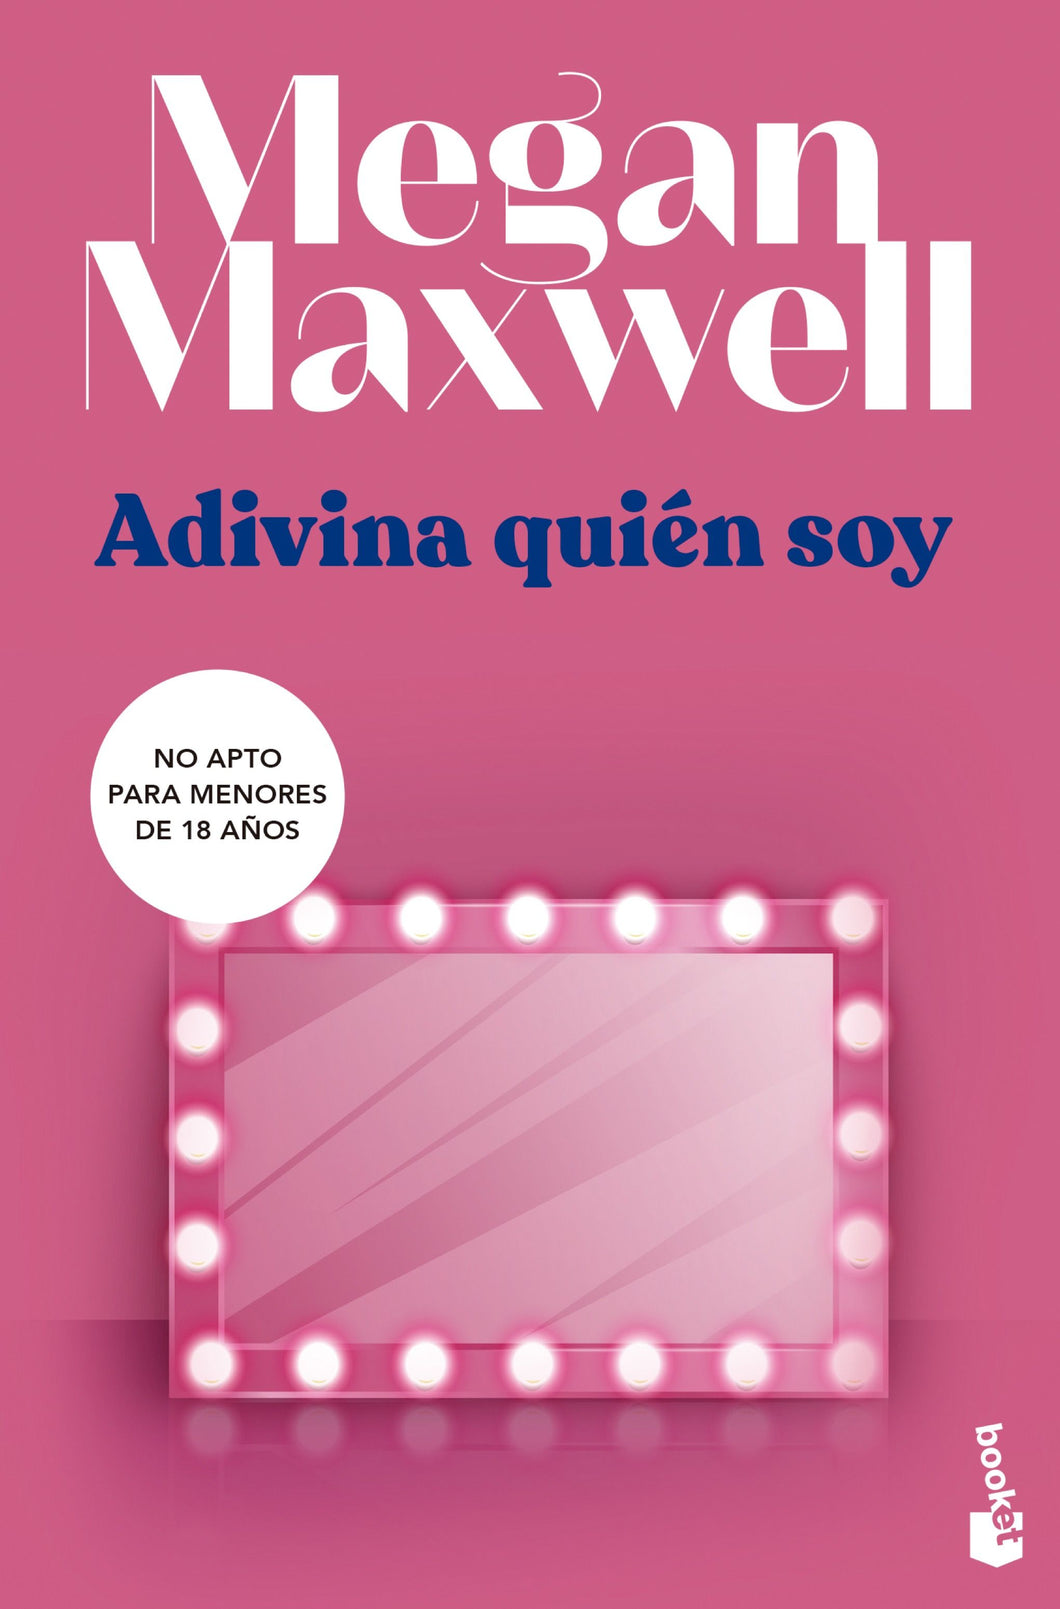 ADIVINA QUIÉN SOY - Megan Maxwell